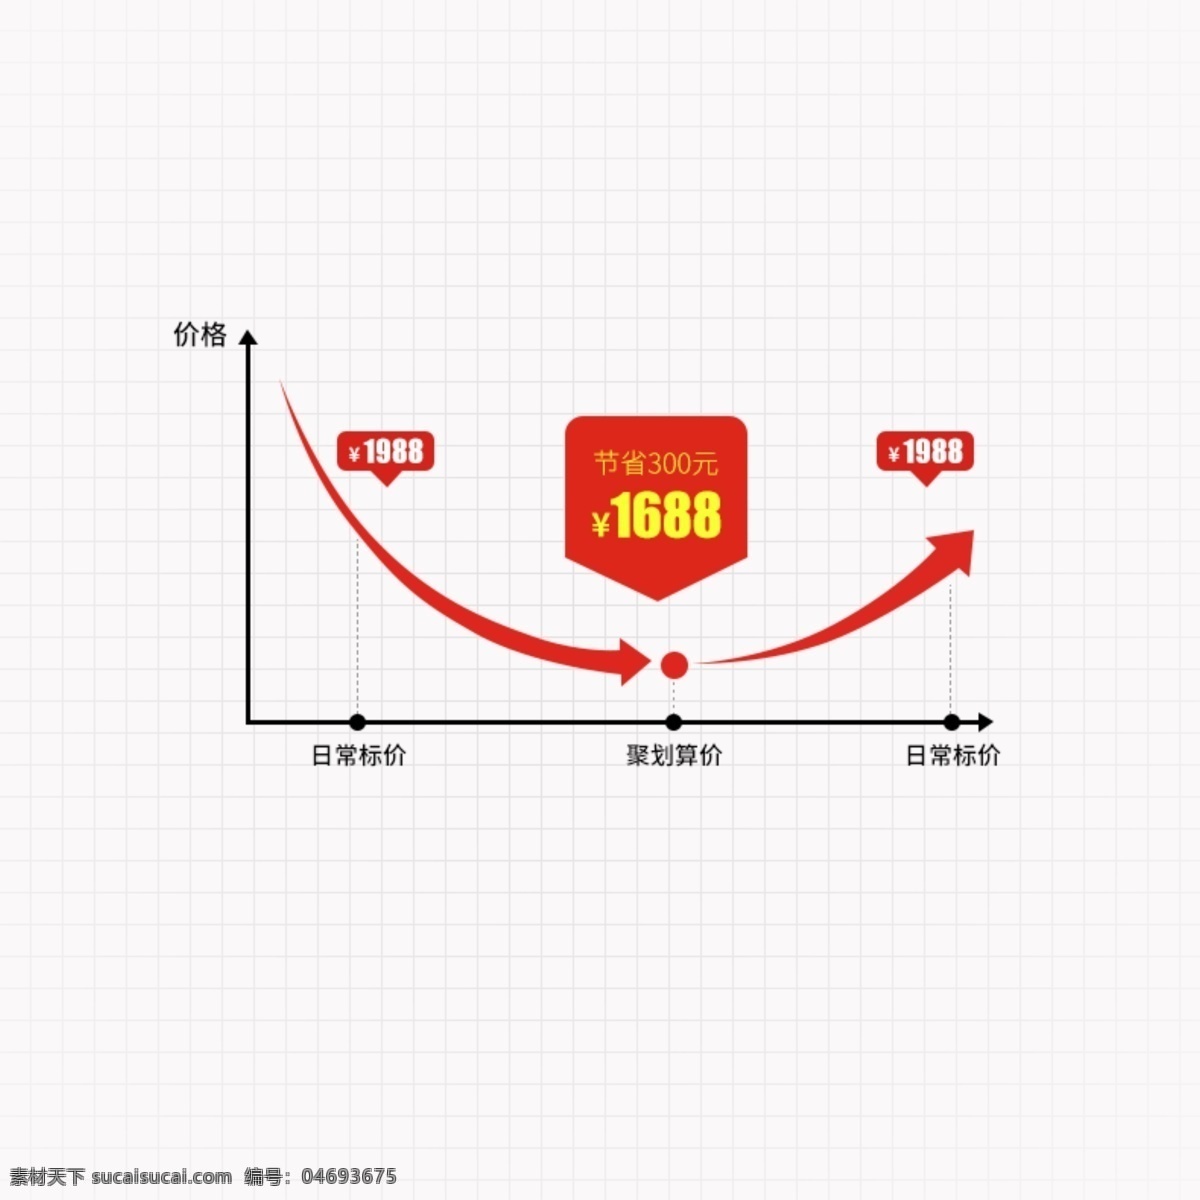 价格 趋势 曲线图 年货节 模板 聚划算 淘抢购 红色简约背景 下单即送 限时狂欢